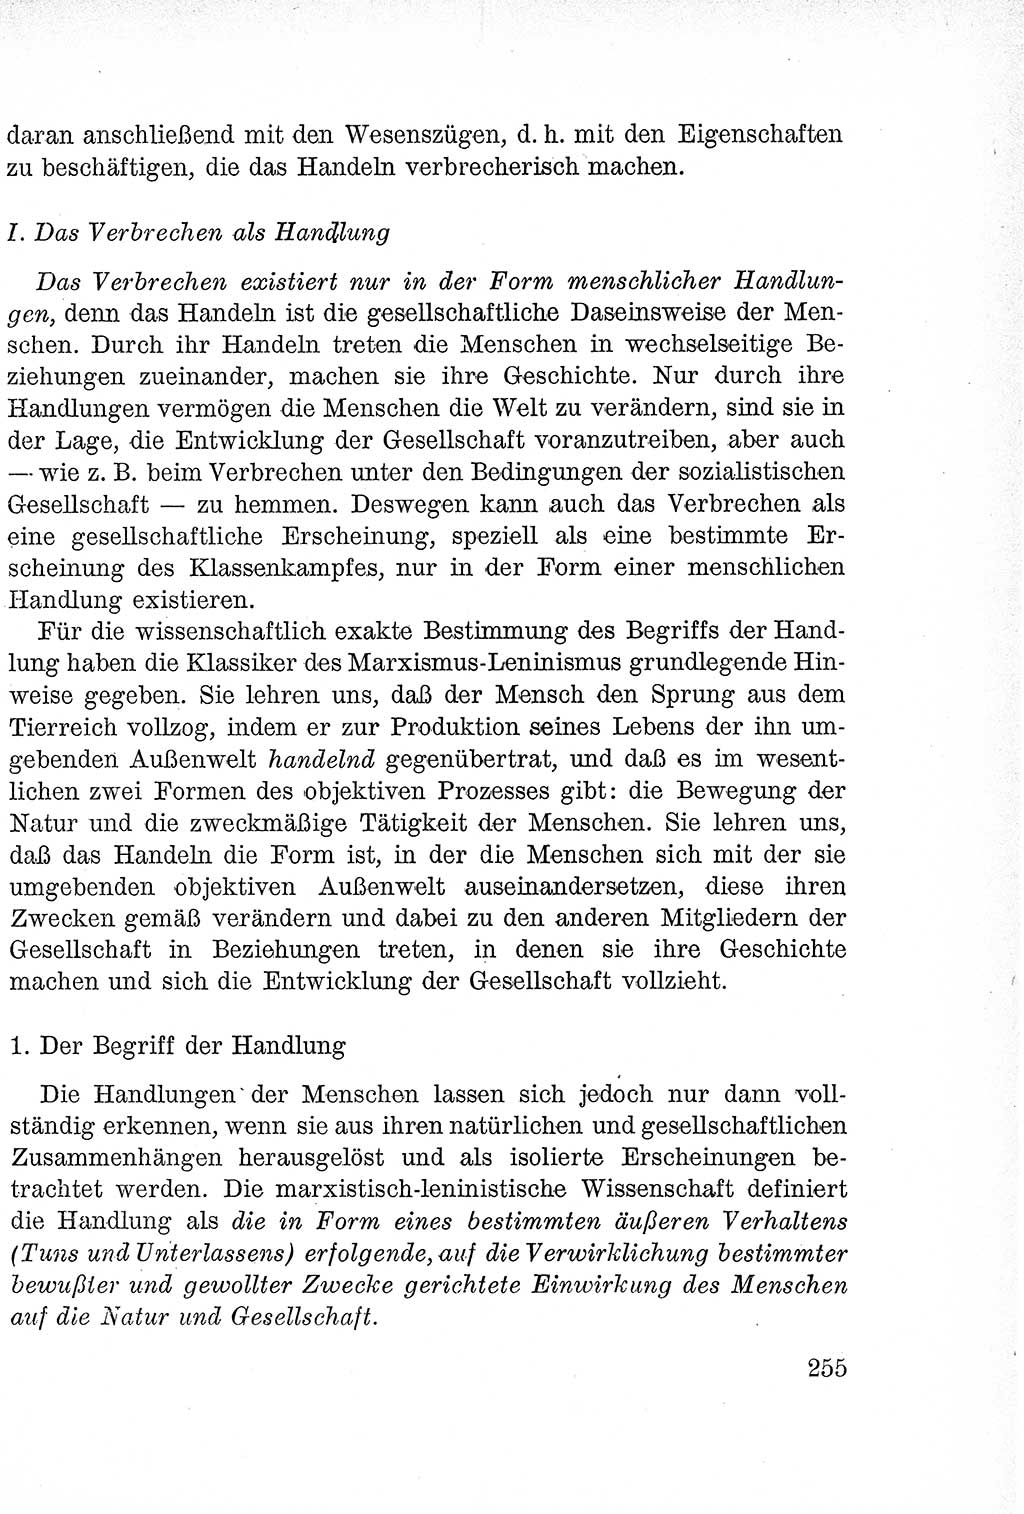 Lehrbuch des Strafrechts der Deutschen Demokratischen Republik (DDR), Allgemeiner Teil 1957, Seite 255 (Lb. Strafr. DDR AT 1957, S. 255)